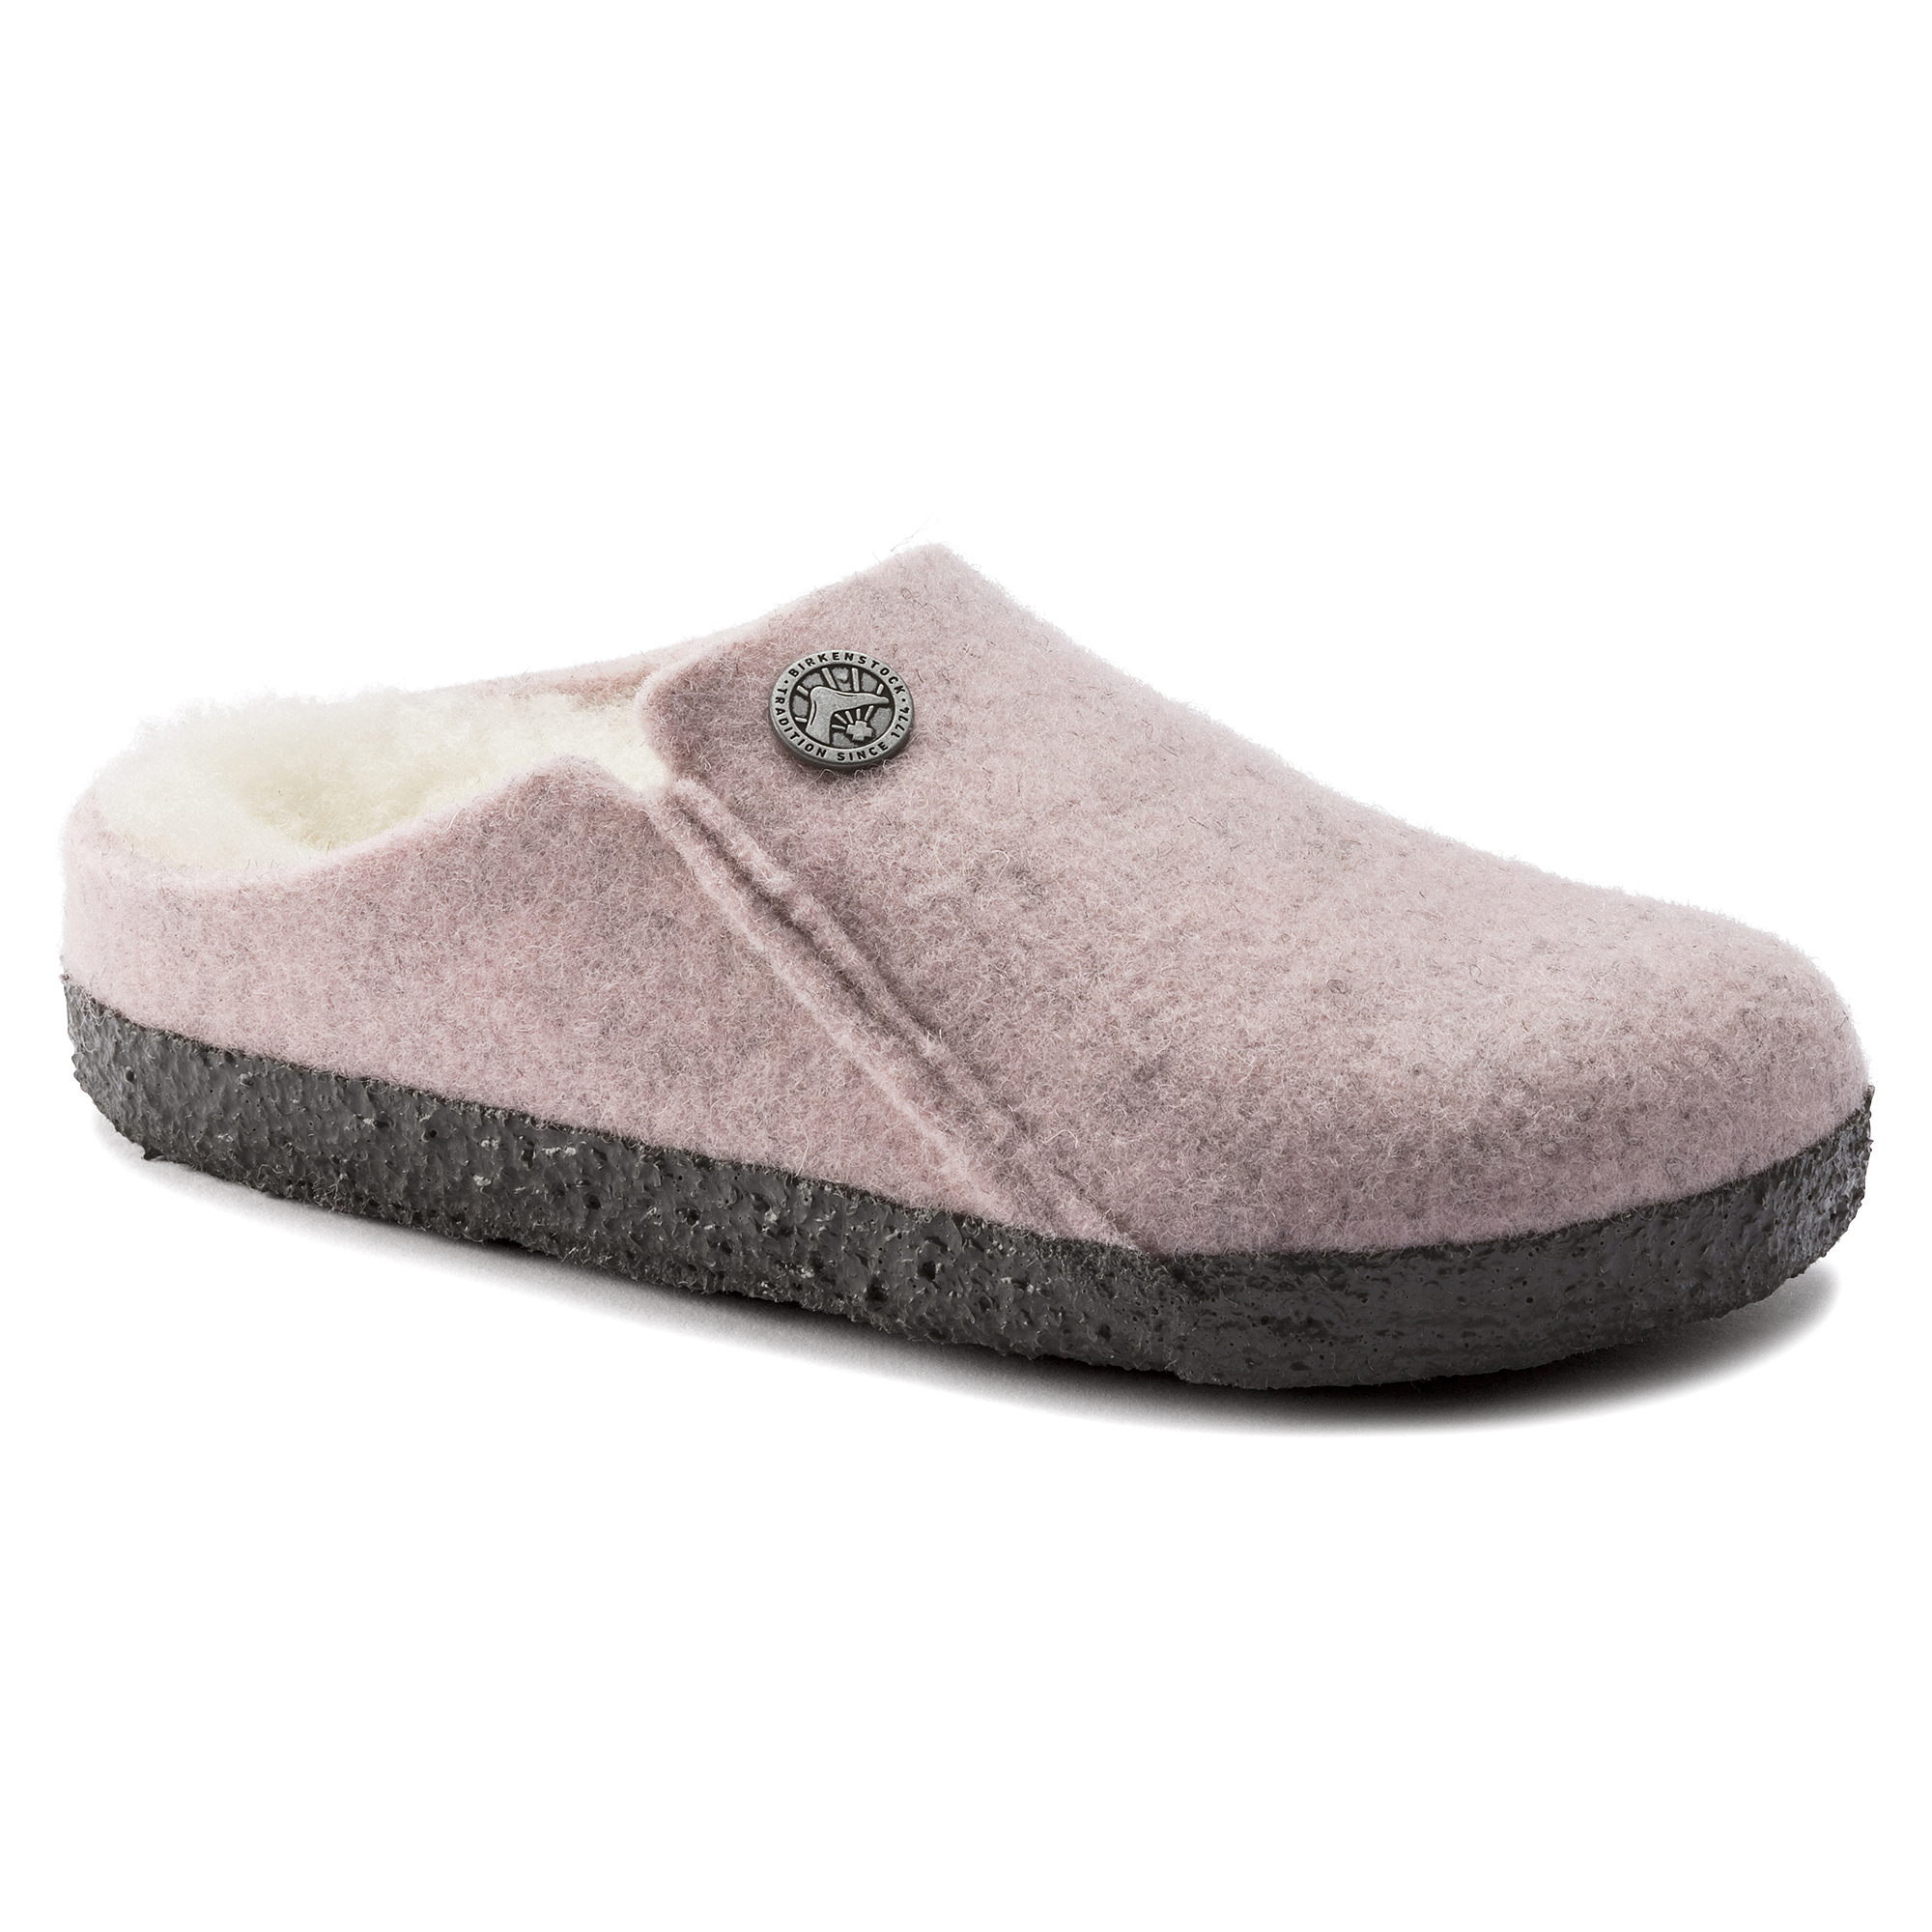 Zermatt Kids Shearling Wool Felt Soft Pink | BIRKENSTOCK